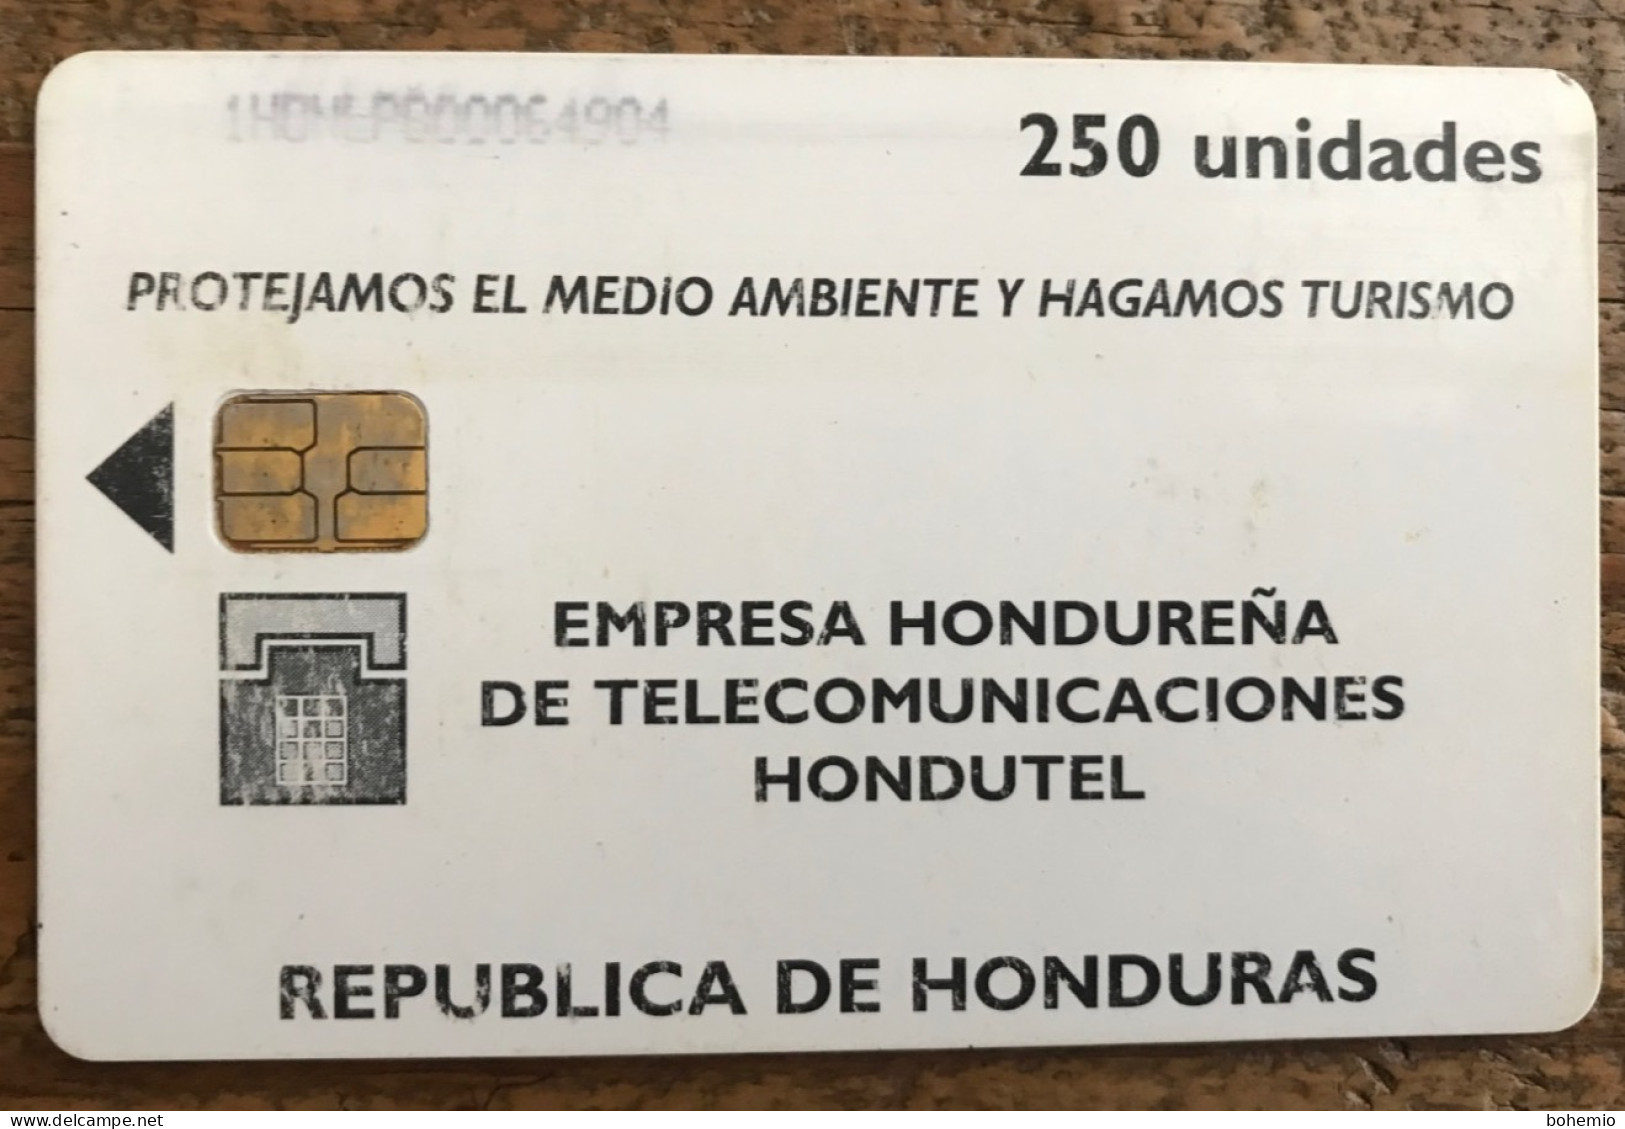 Honduras Tarjeta 1 Con Detalles - Honduras